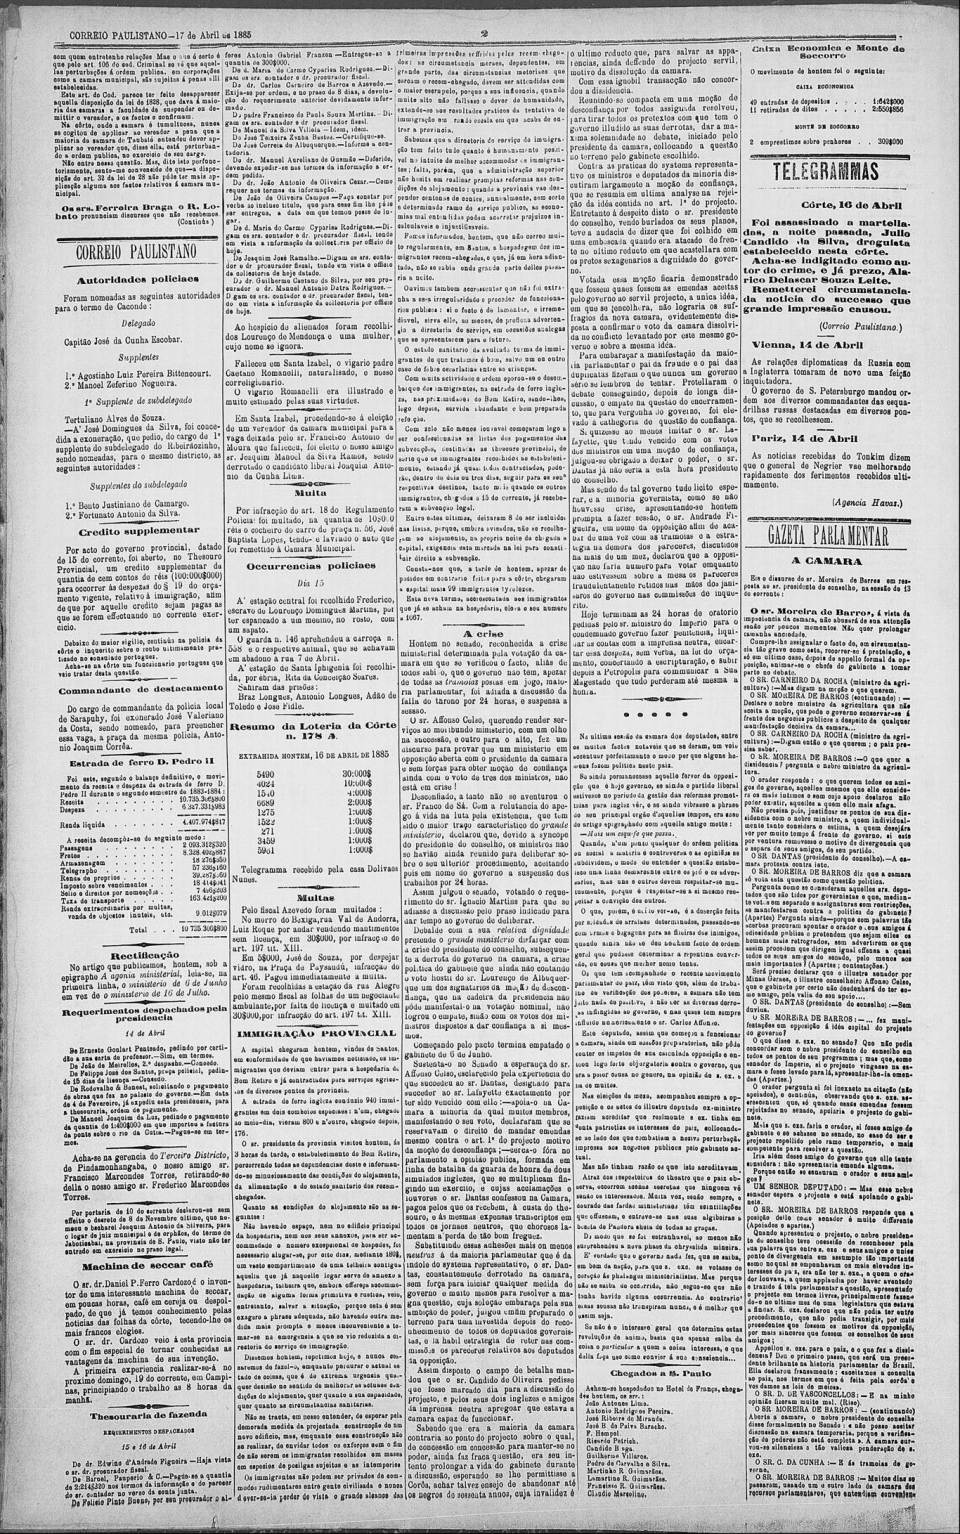 art-vapor-maria-em-santos-problemas-2-correio-paulistano-17-april-1885-folha